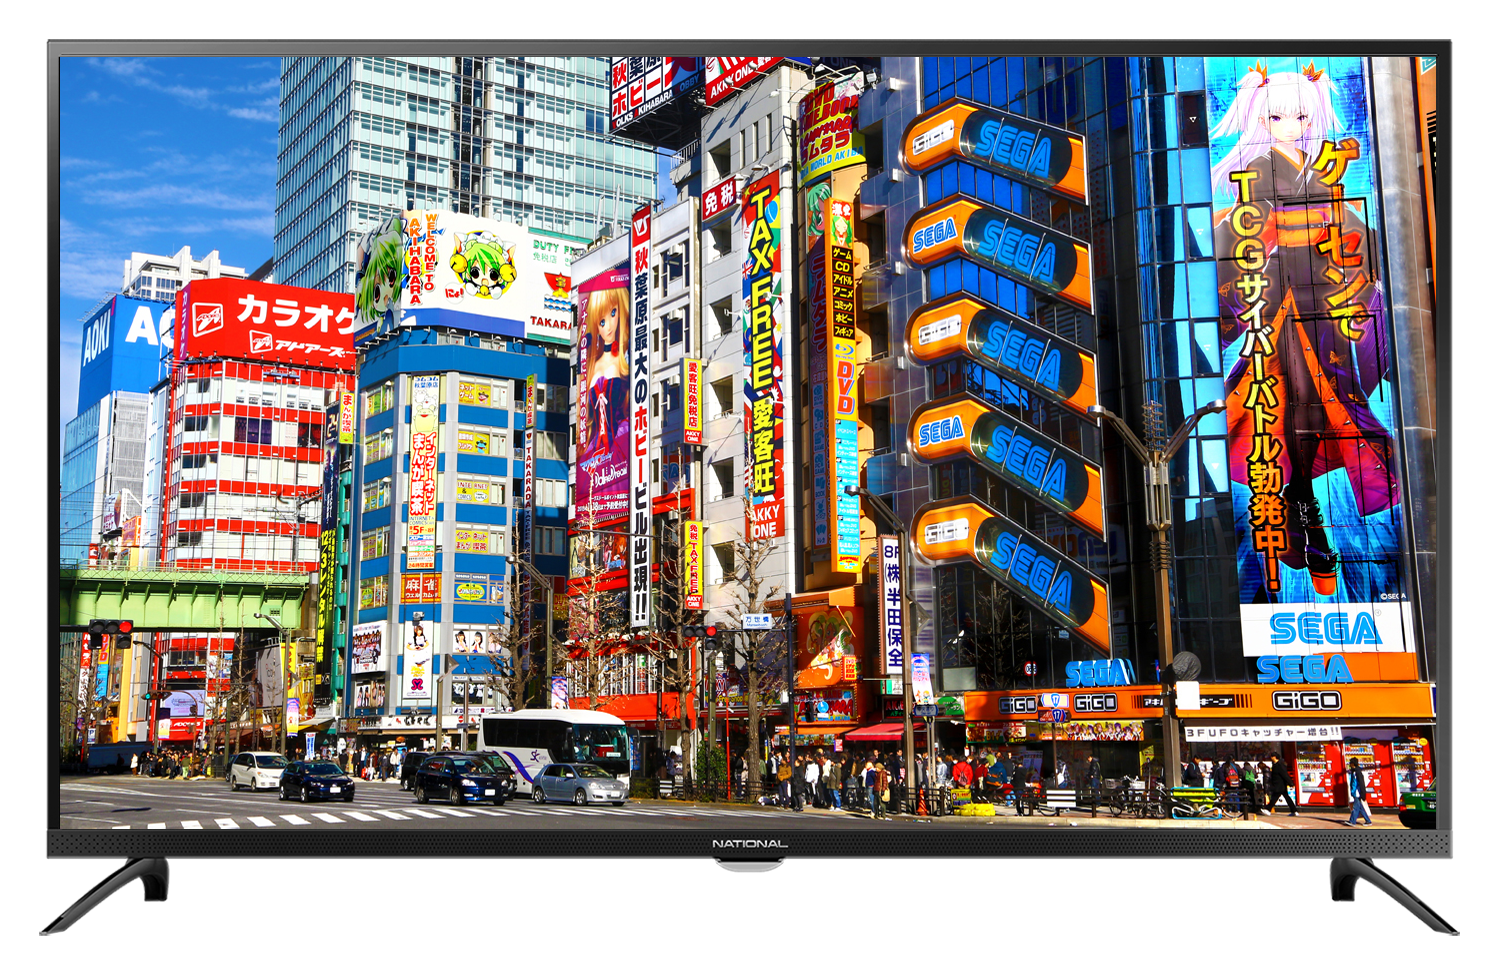 Картинка Smart телевизор NATIONAL NX-32THS110 по разумной цене купить в интернет магазине mall.su